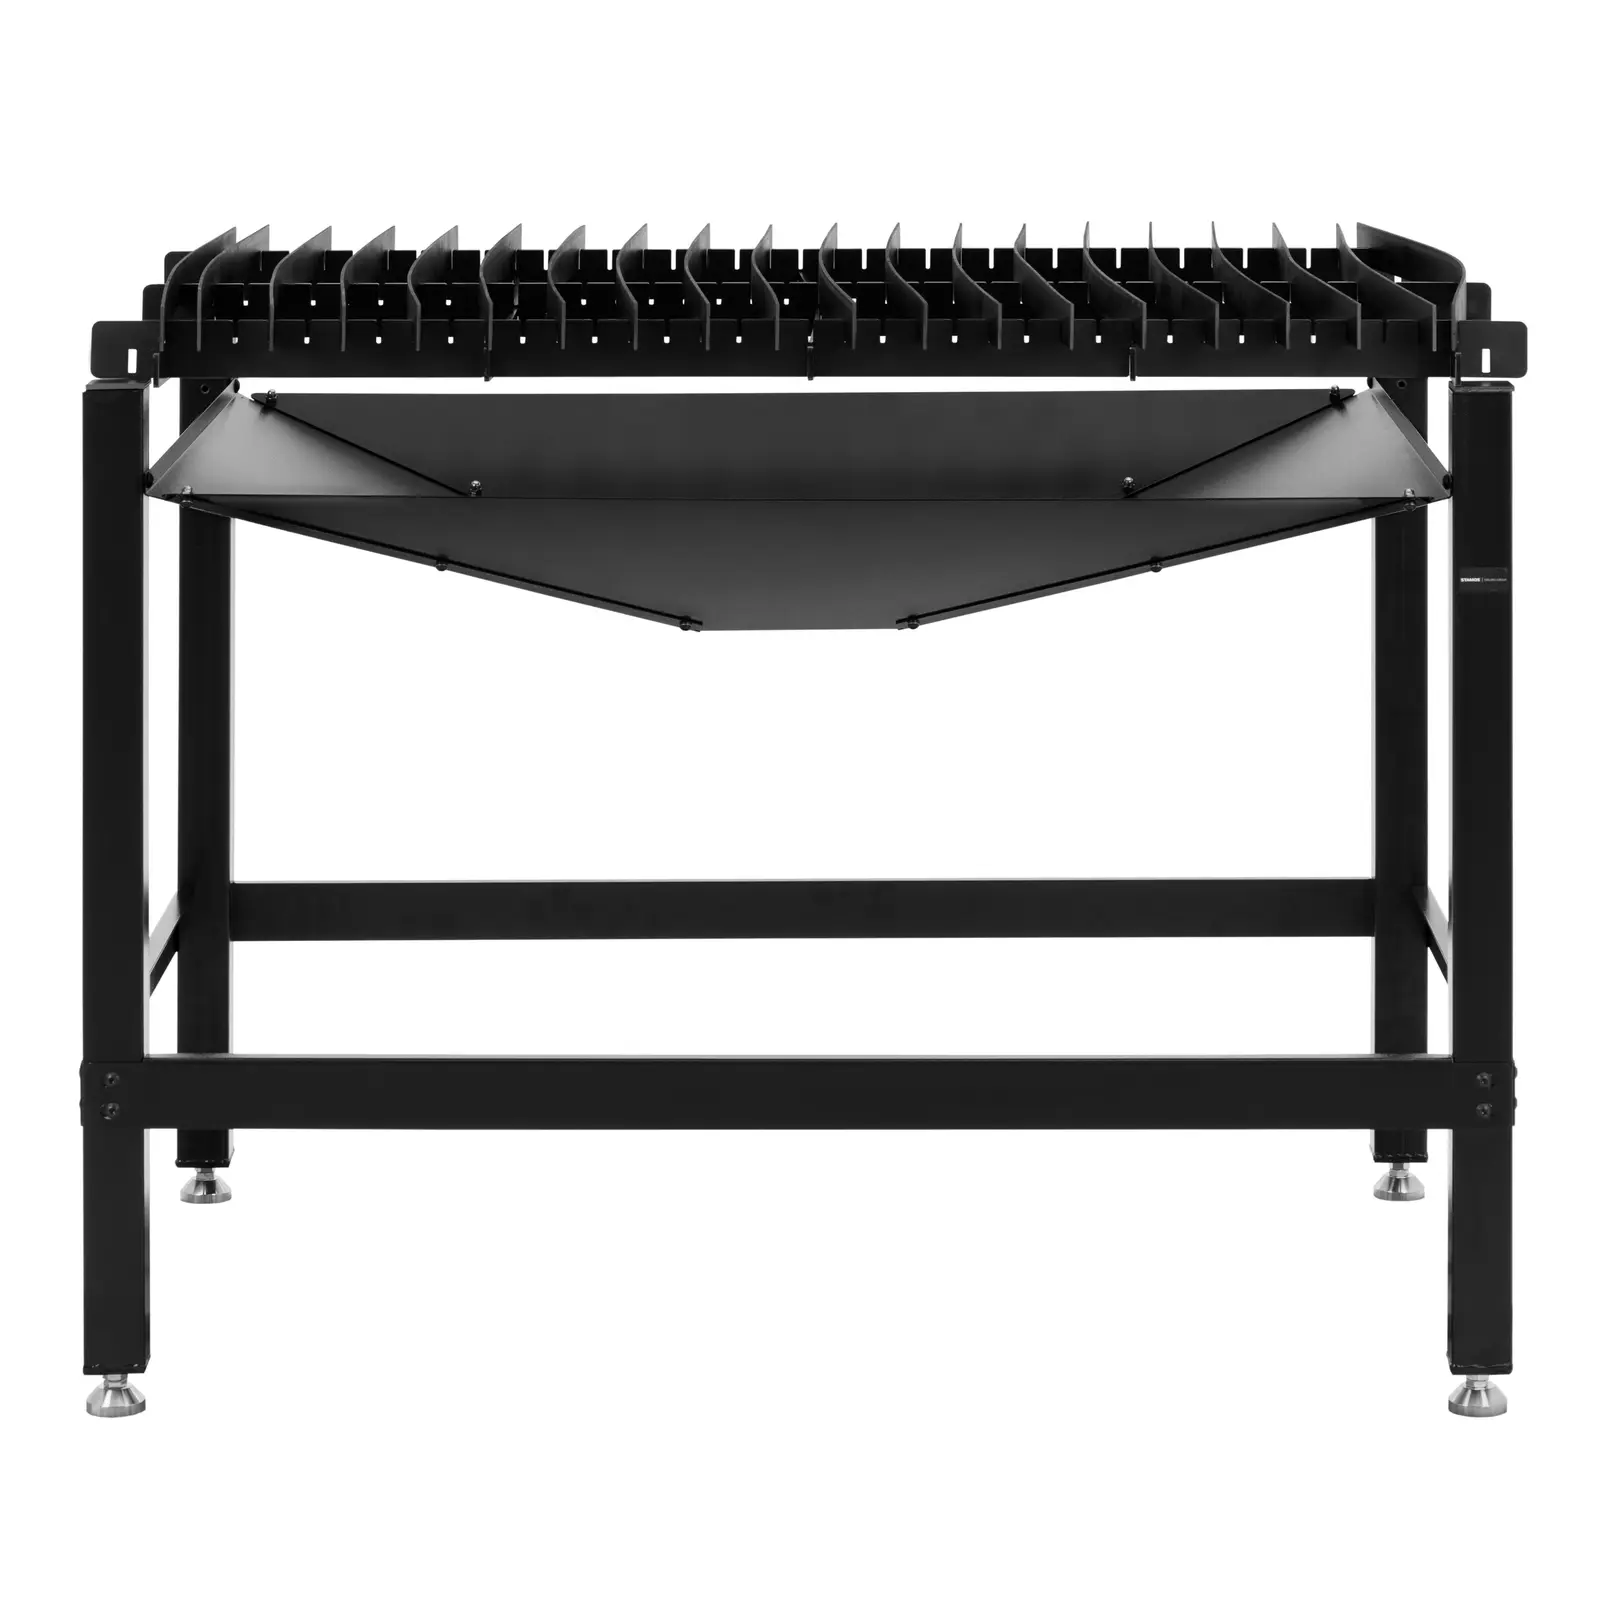 Plazmový rezací stôl - 120 x 80 cm - 150 kg